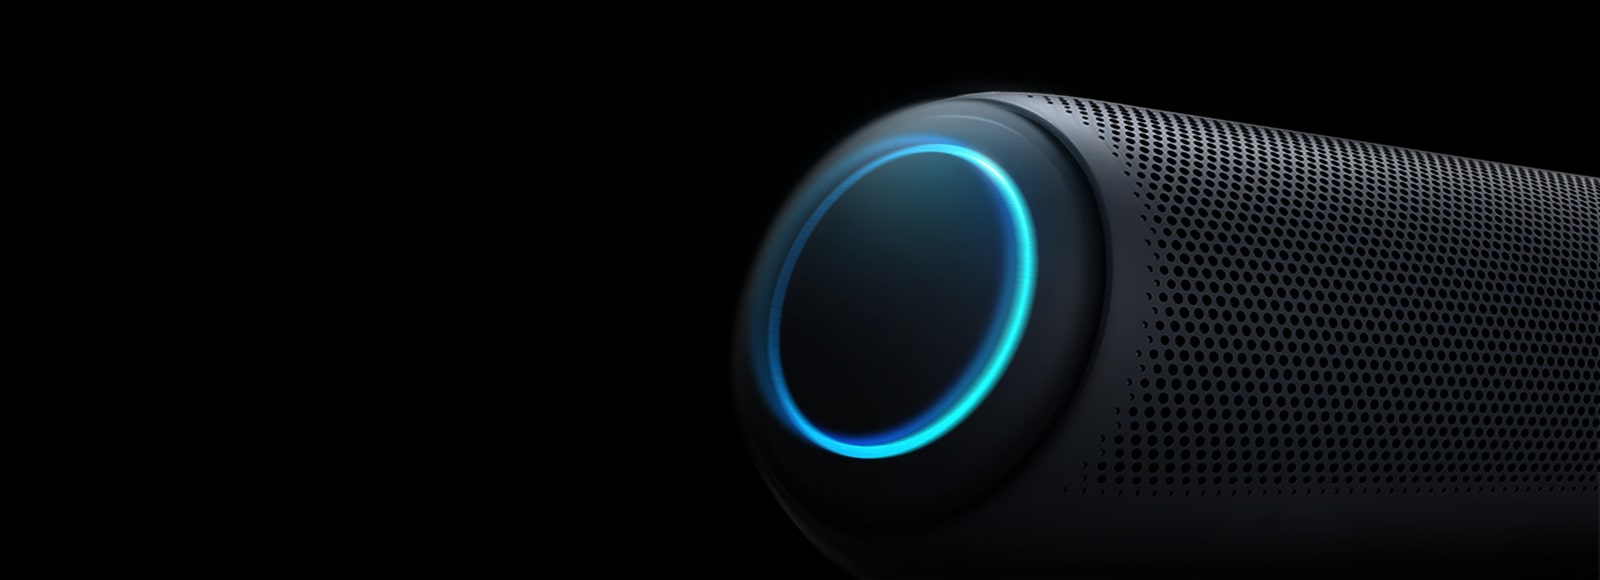 على خلفية سوداء، هناك صورة مقربة لمكبر الصوت الأيسر لجهاز LG XBOOM Go مع إضاءة باللون الأزرق السماوي.